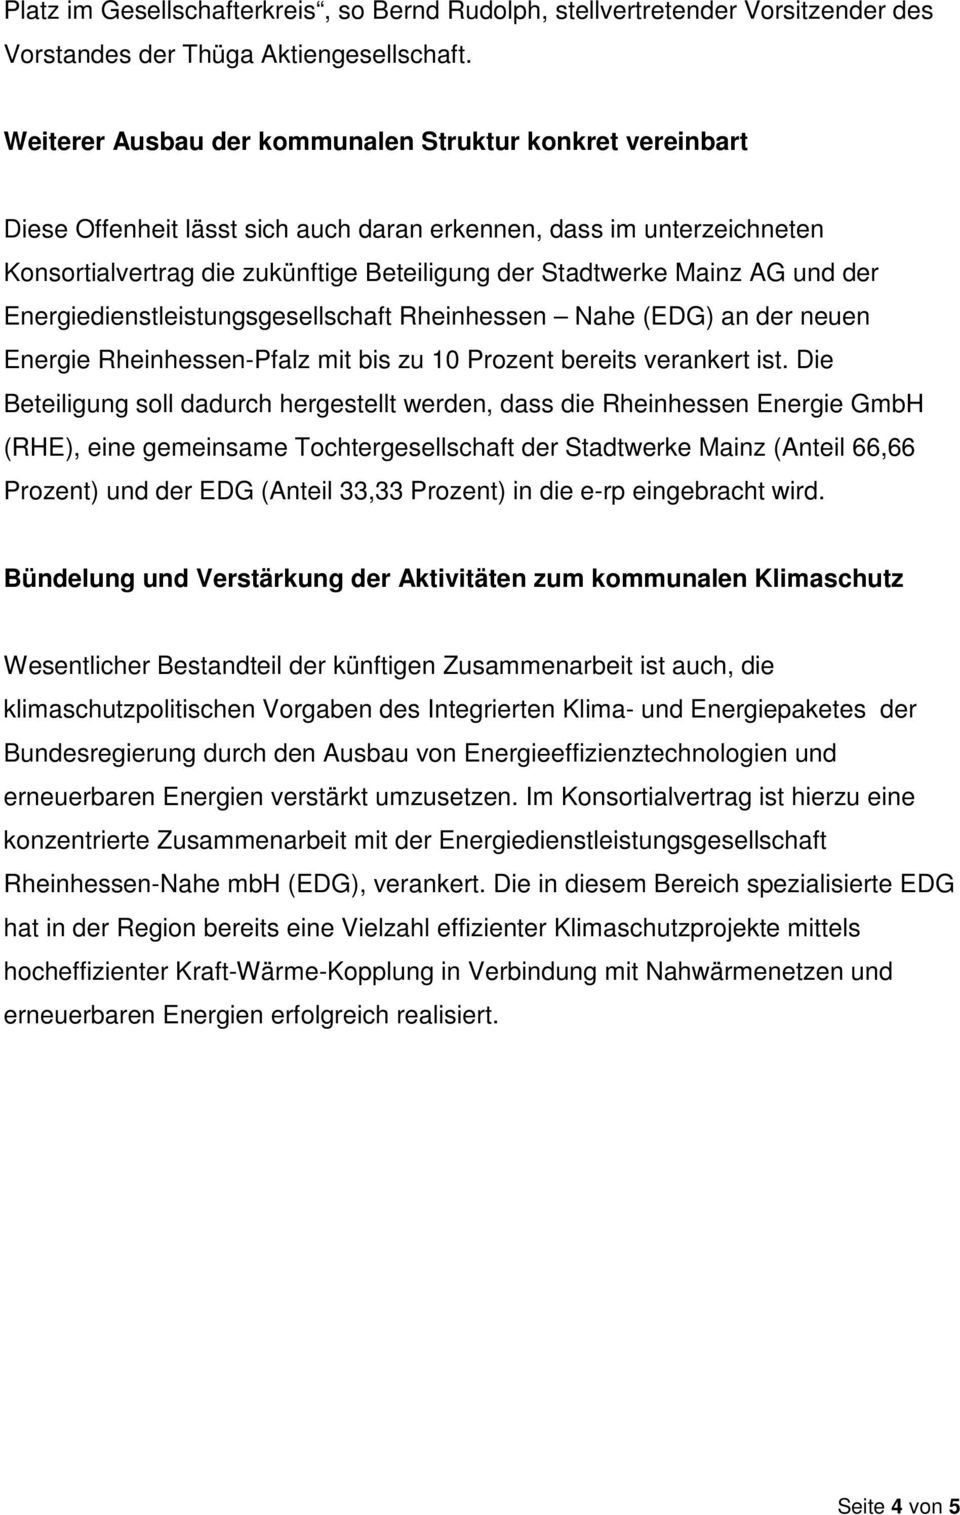 und der Energiedienstleistungsgesellschaft Rheinhessen Nahe (EDG) an der neuen Energie Rheinhessen-Pfalz mit bis zu 10 Prozent bereits verankert ist.